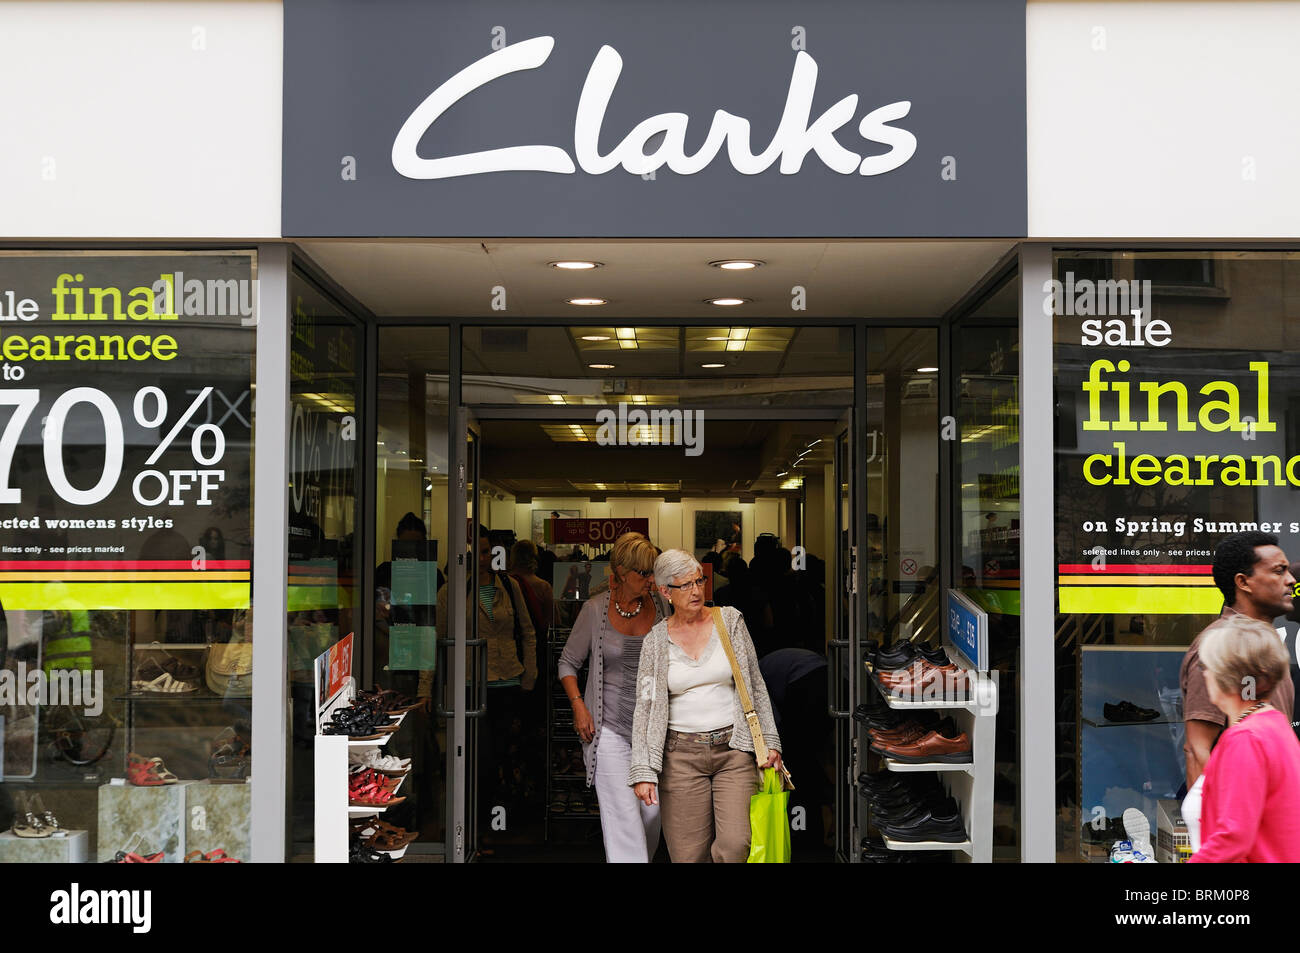 clarks shoe factory shop